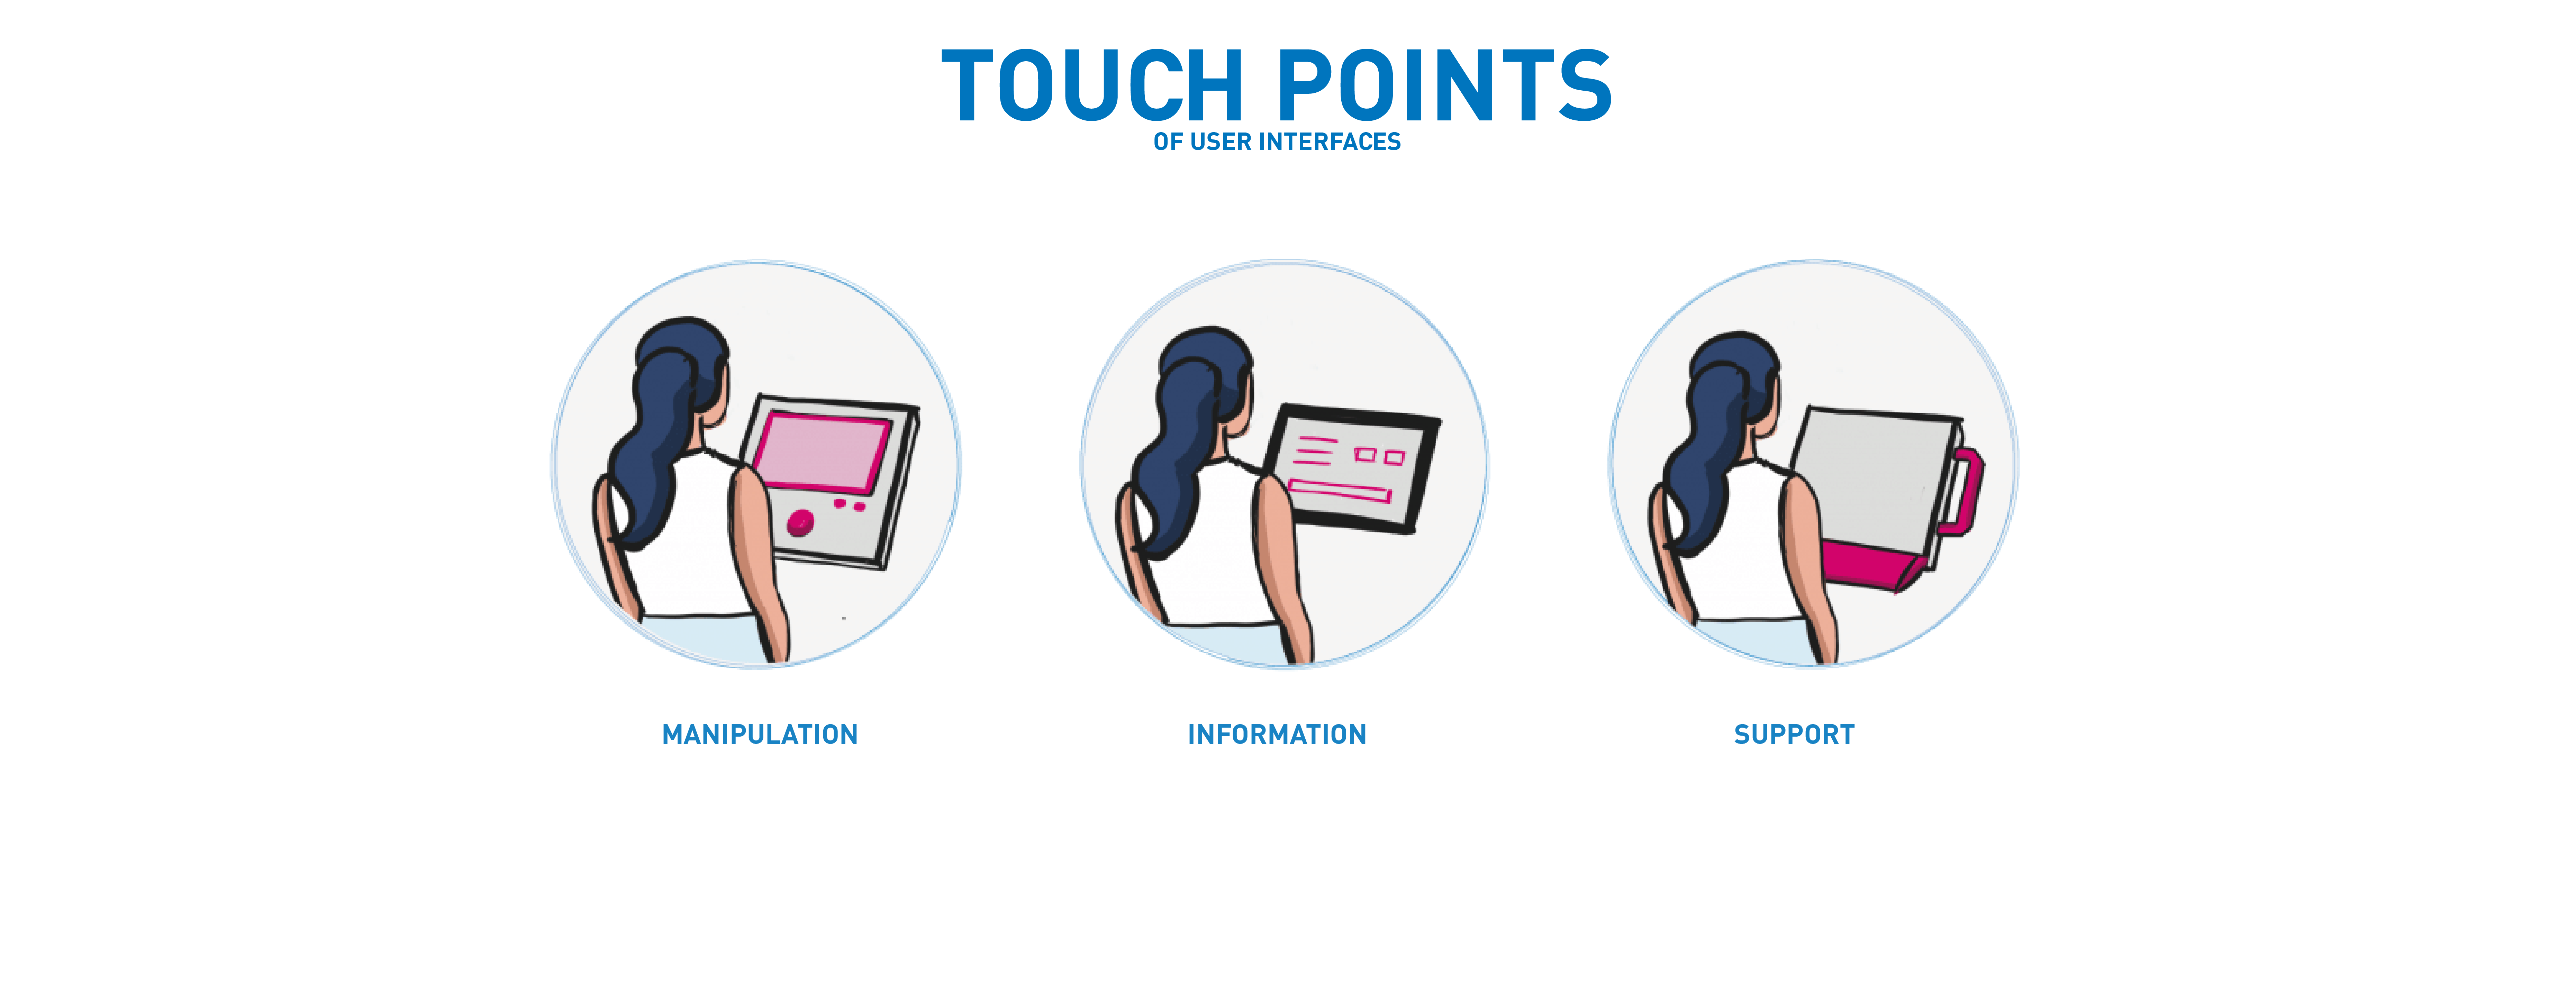 Grafik zum Thema Touchpoints